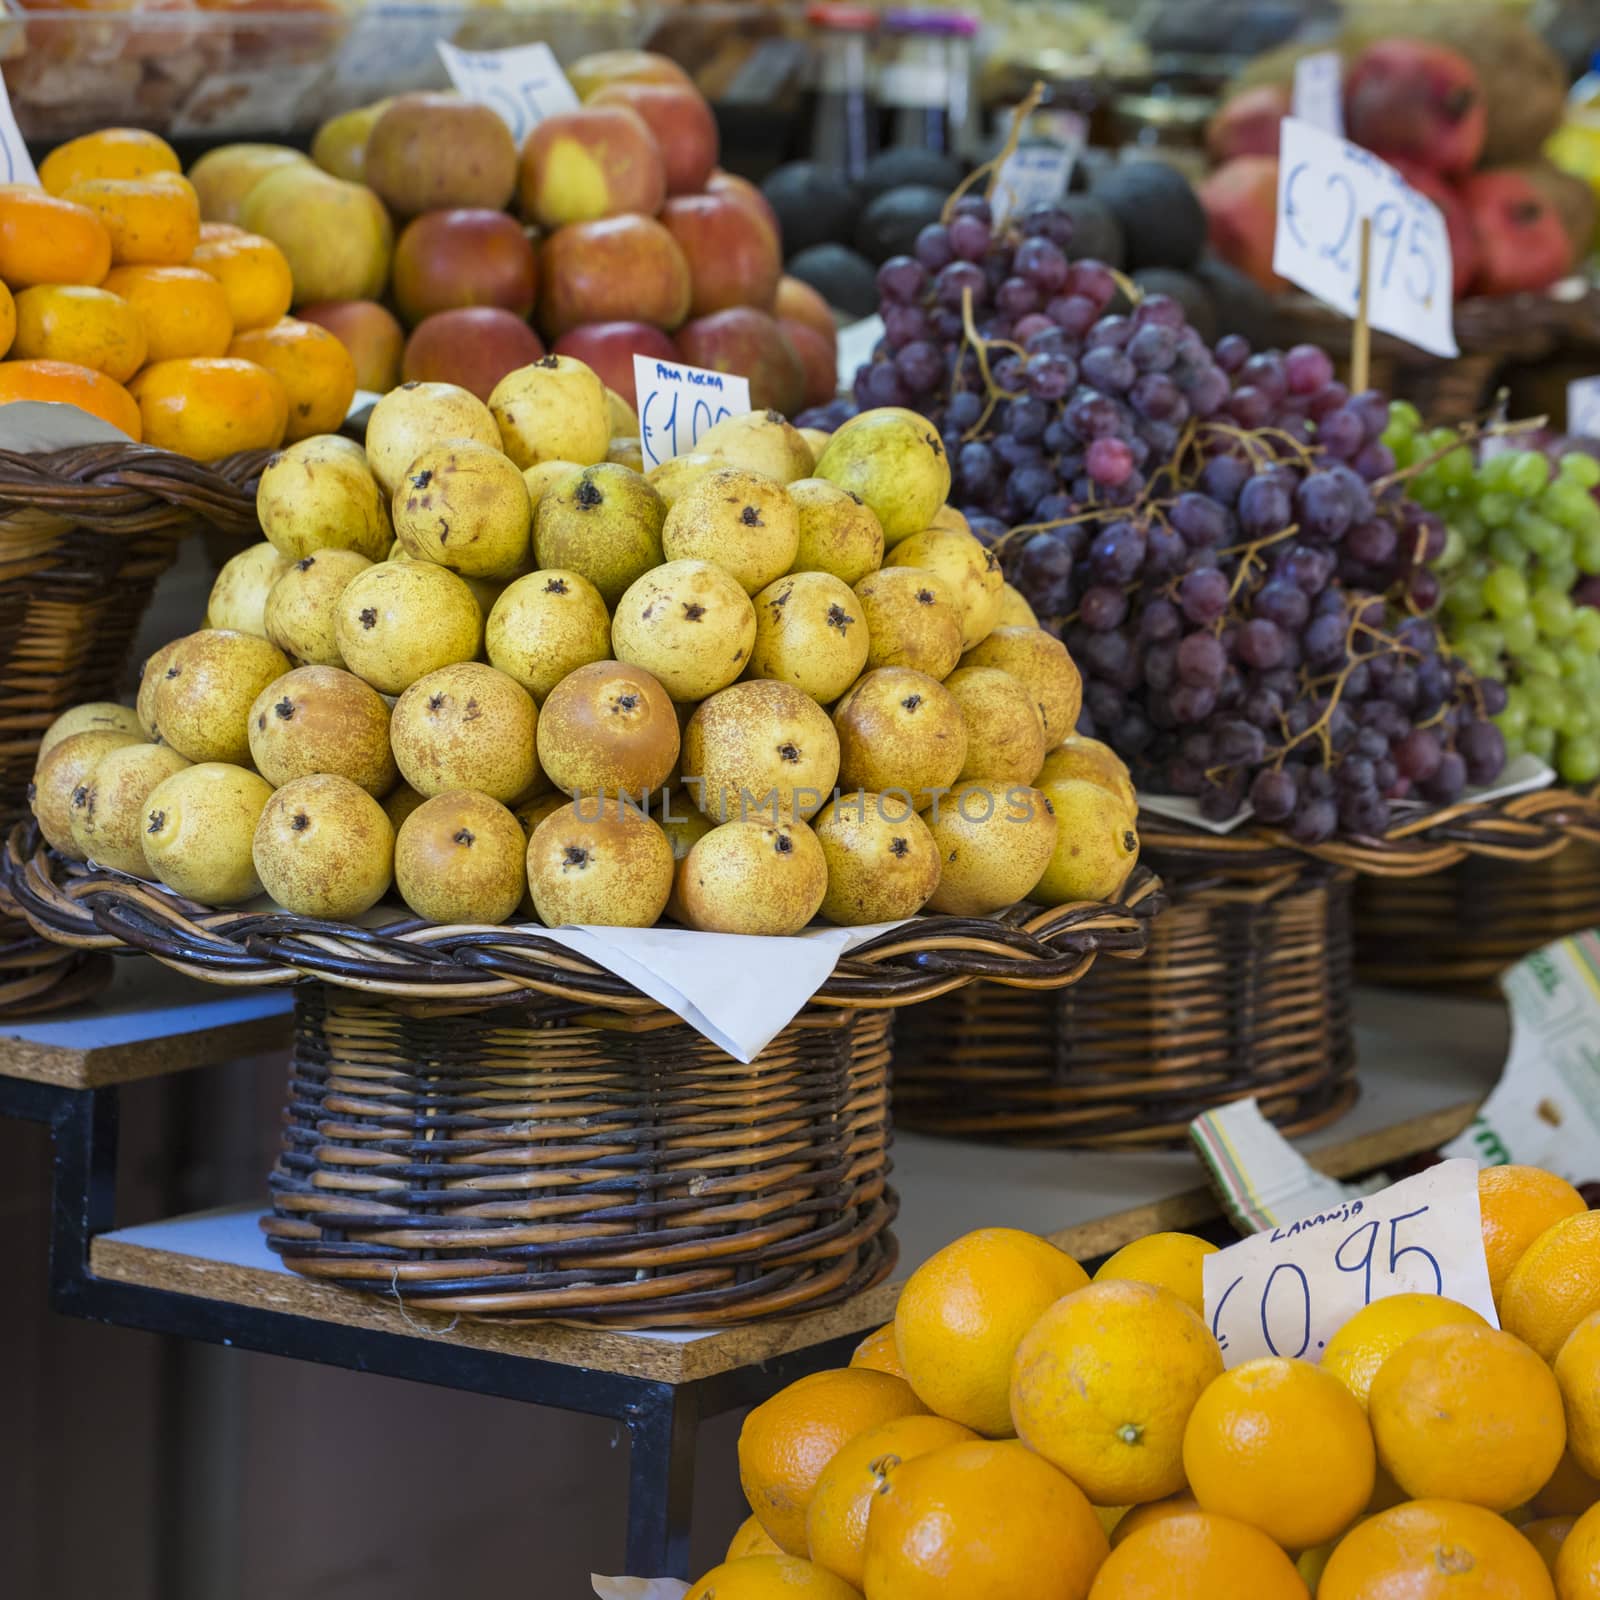 Fresh exotic fruits in Mercado Dos Lavradores. Funchal, Madeira

